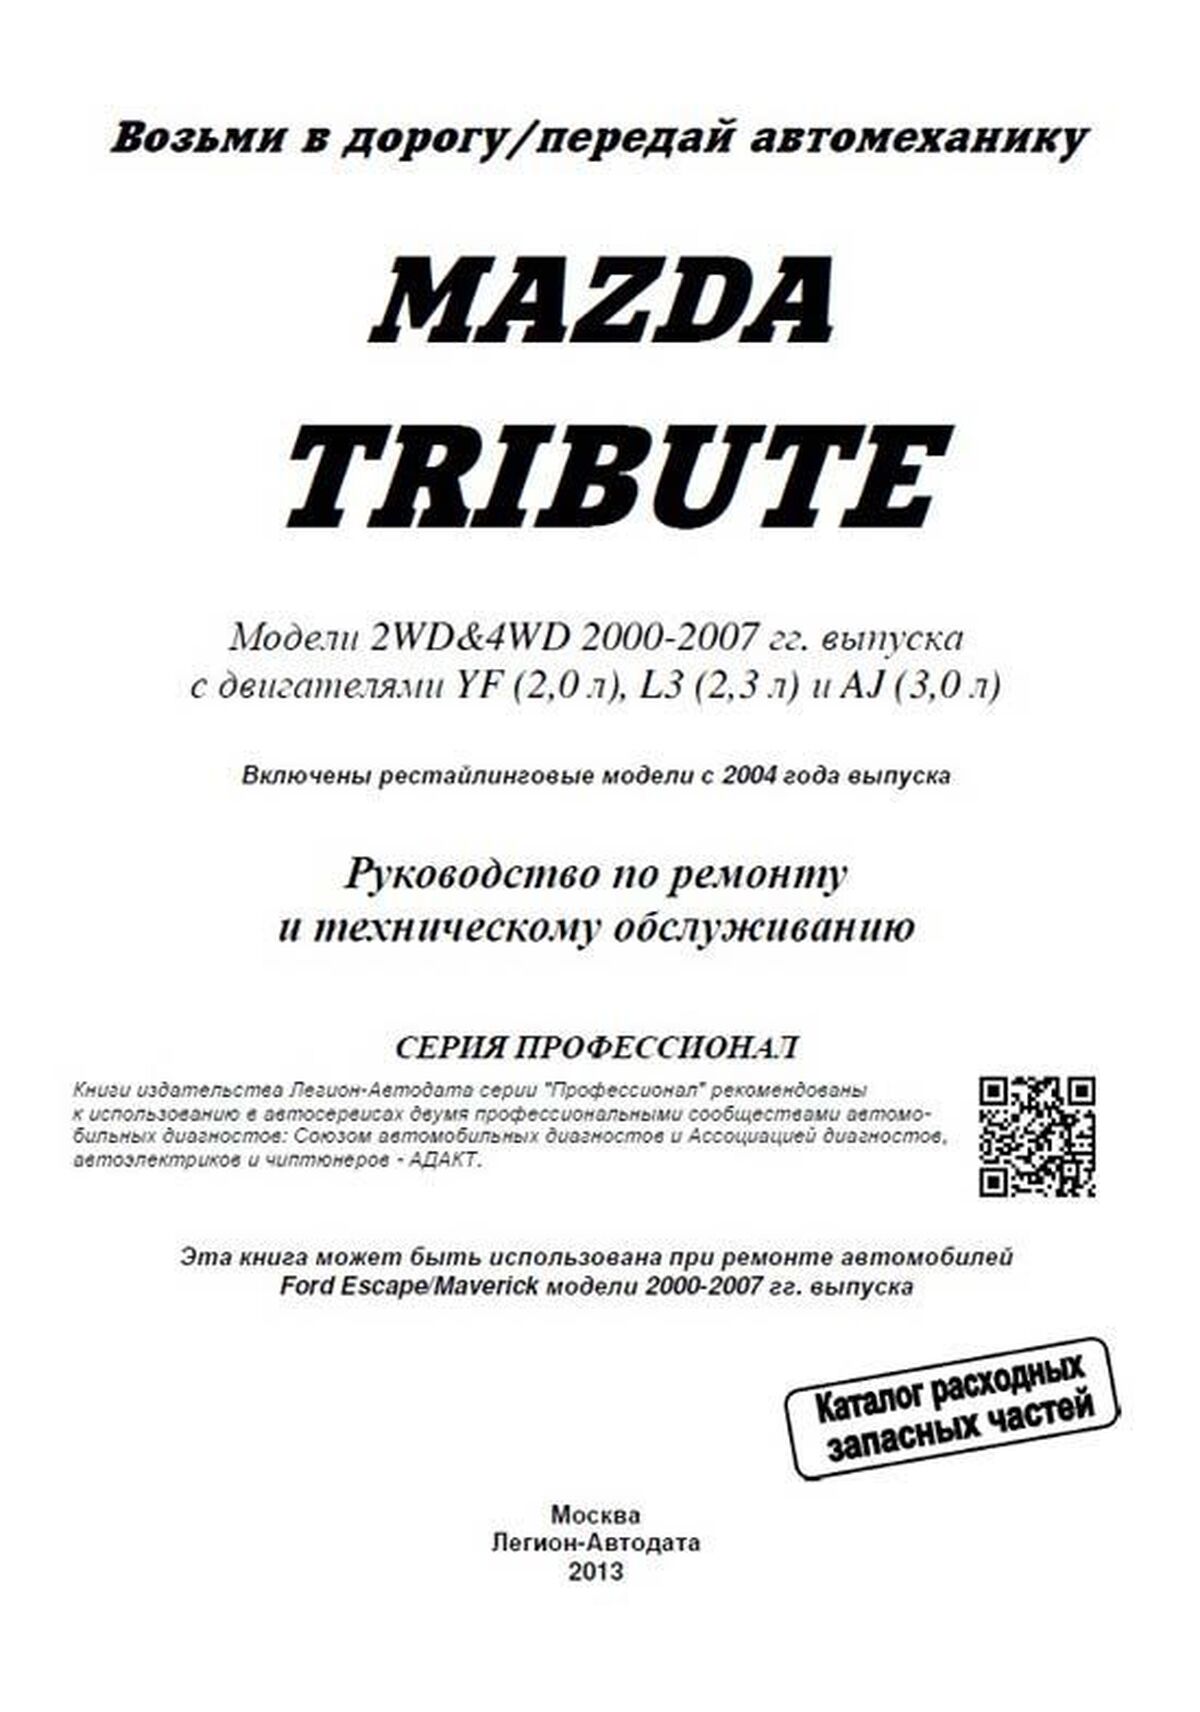 Книга: MAZDA TRIBUTE (б) 2000-2007 г.в., включая рест. 2004 года, рем., то | Легион-Aвтодата